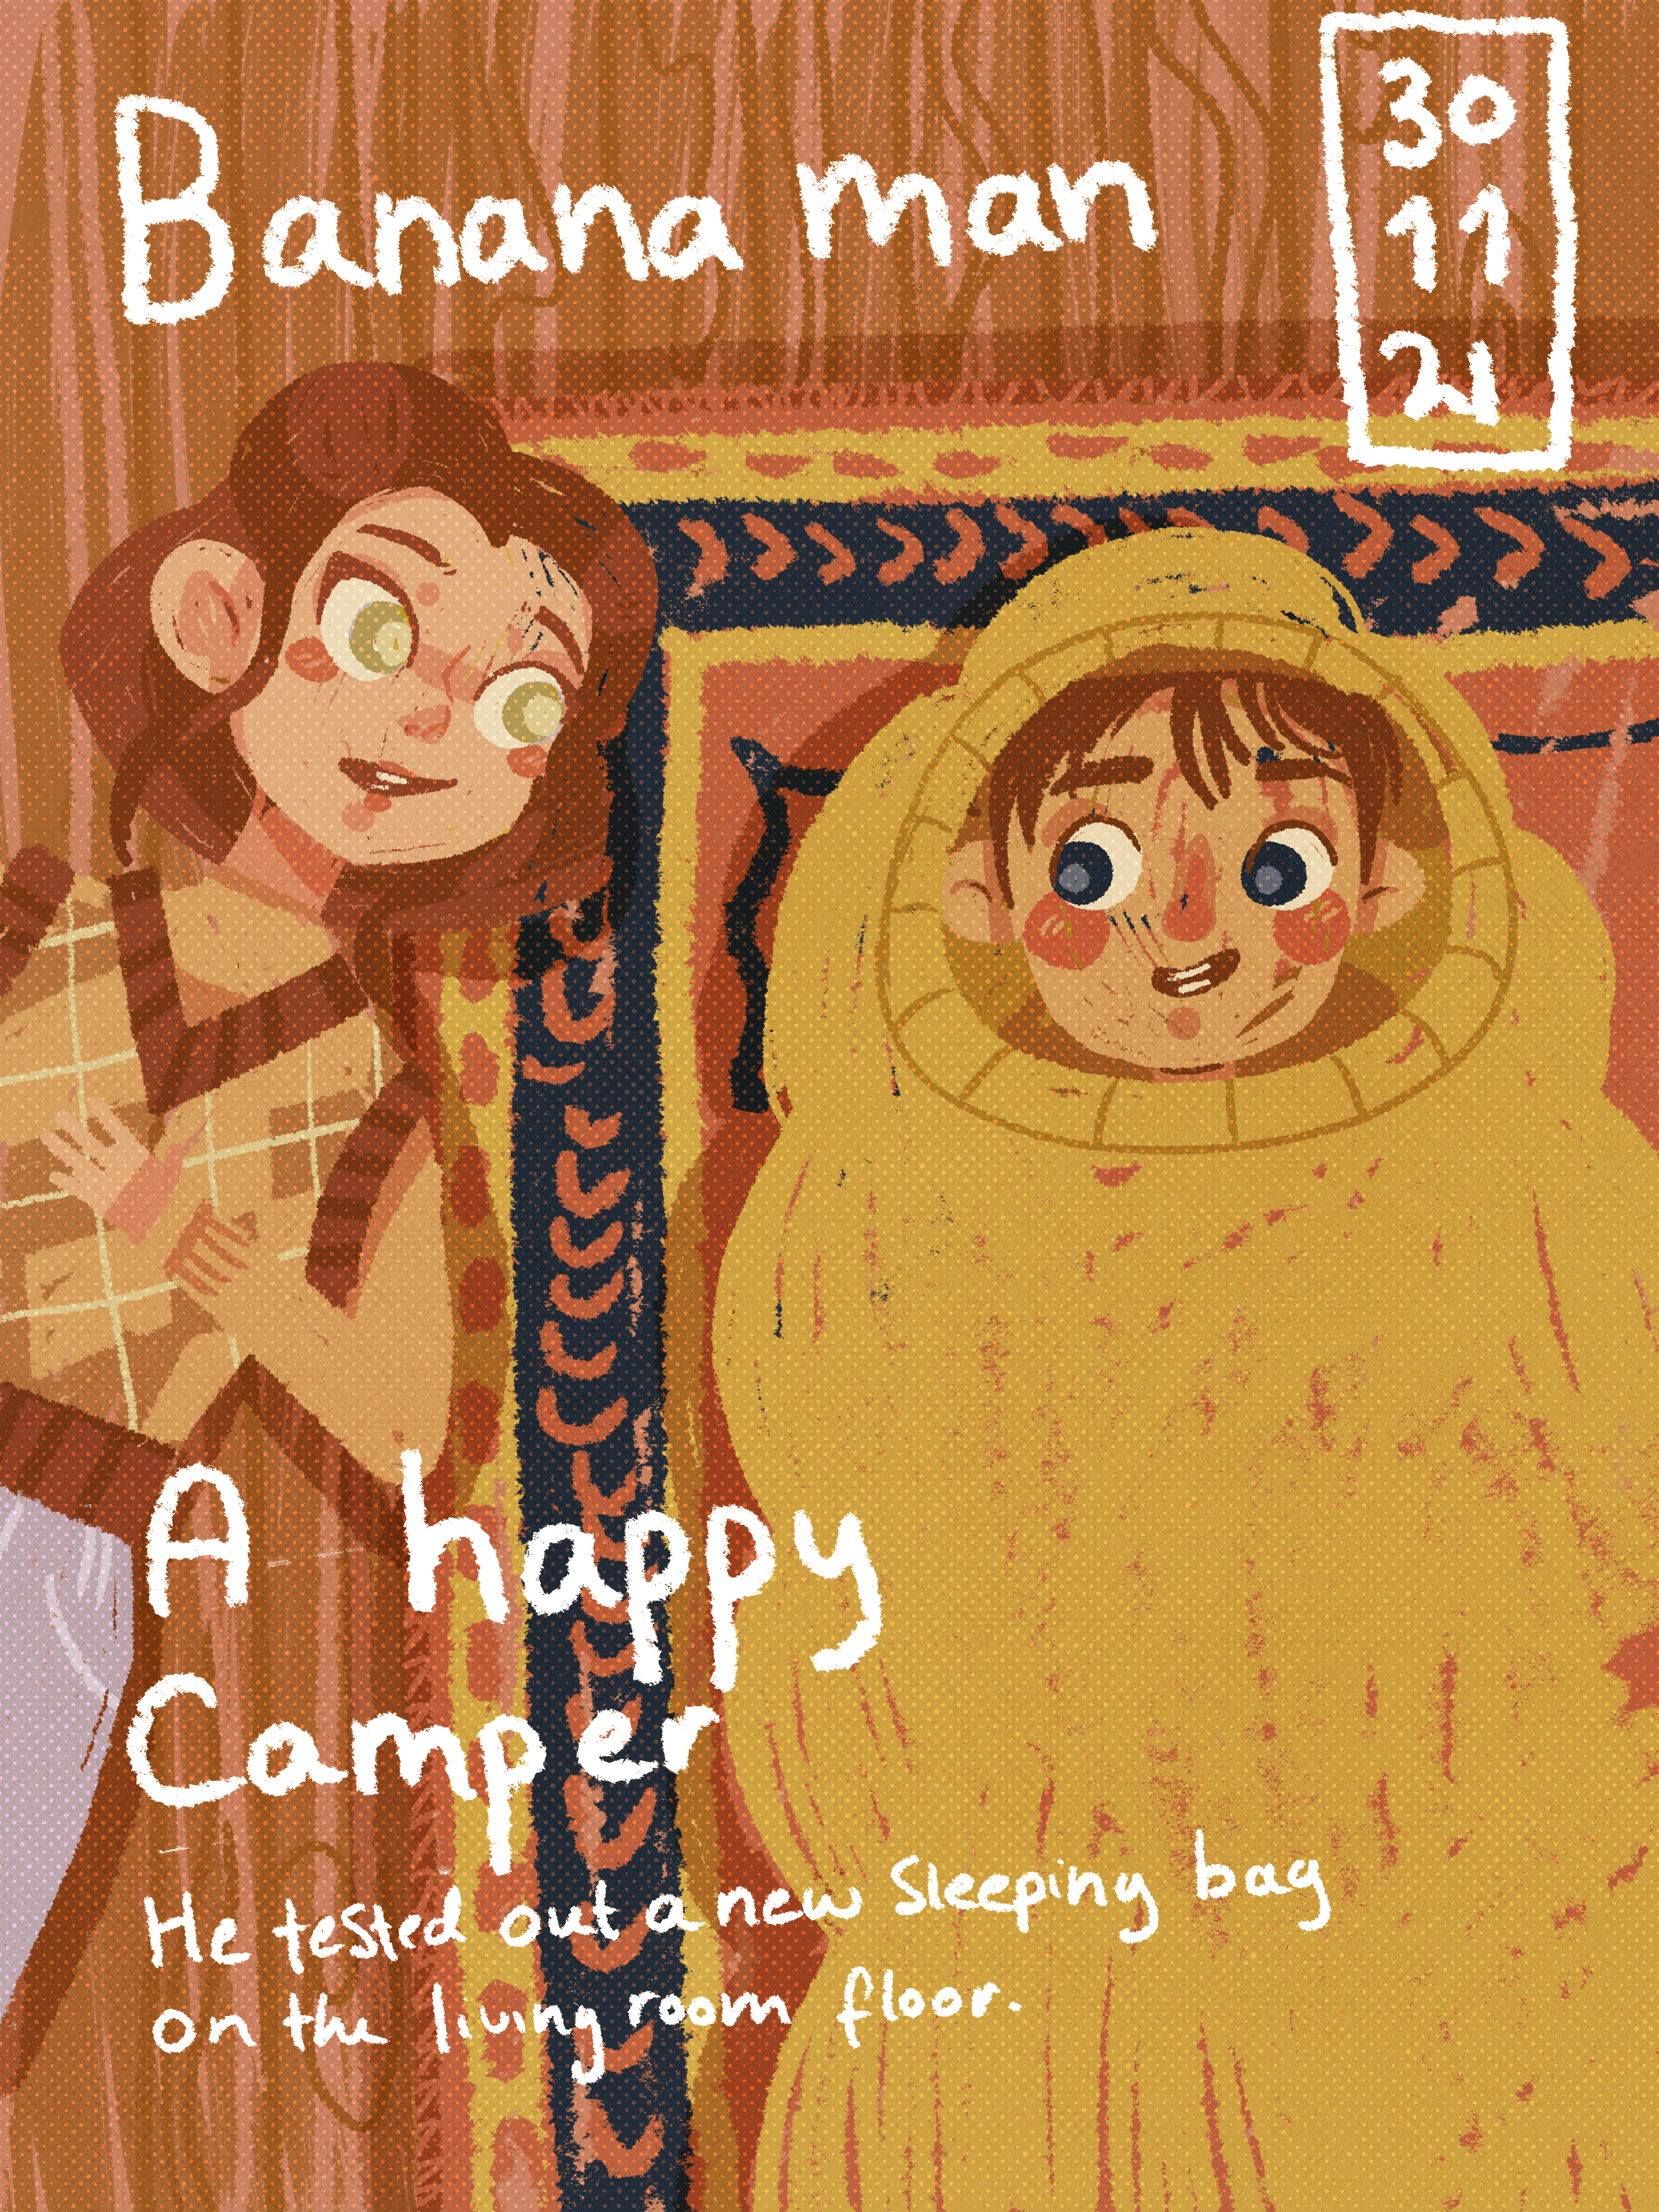 A happy camper